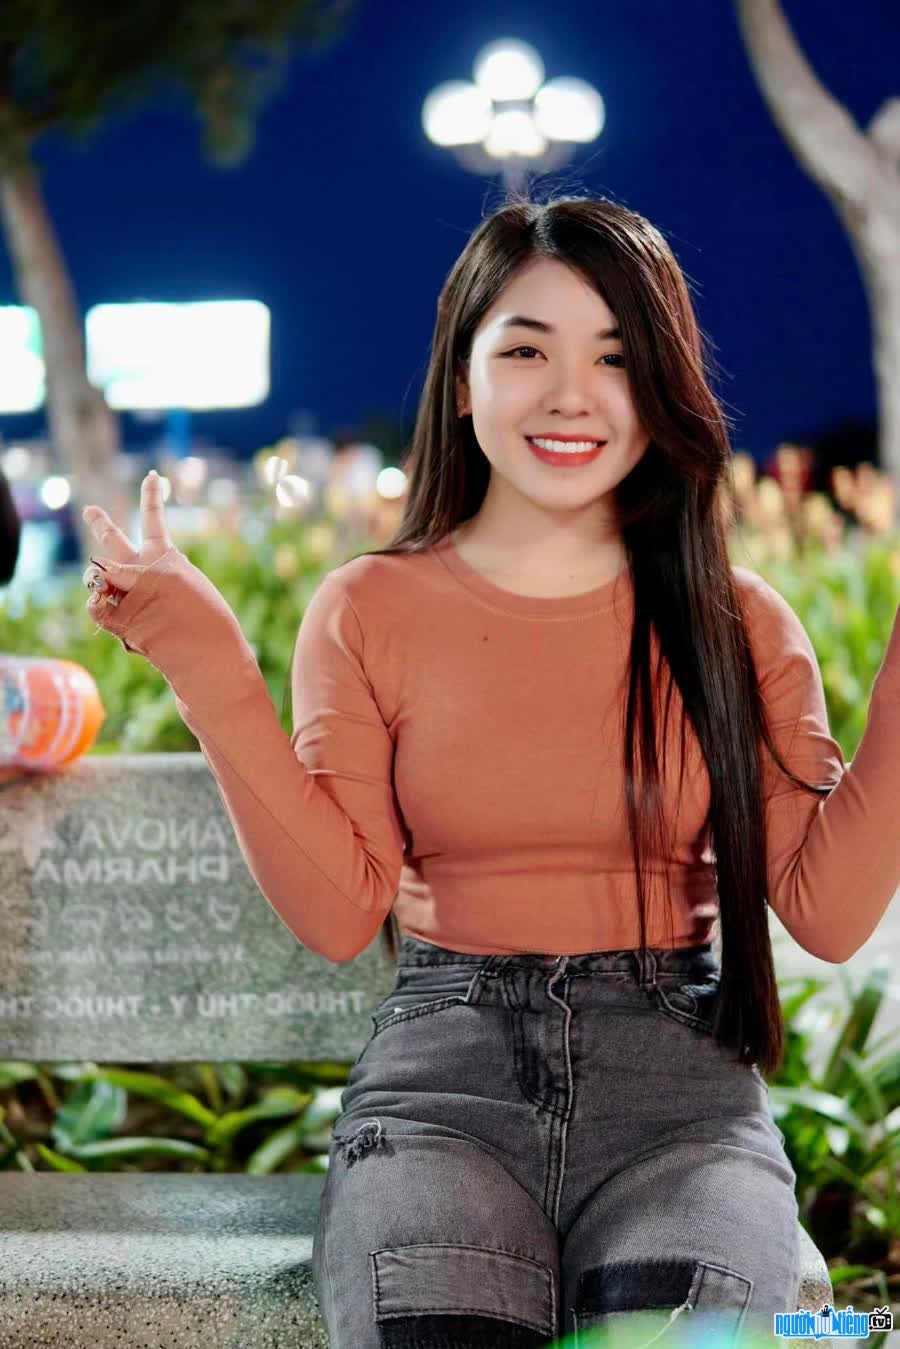 TikToker Nguyễn Vy Family còn hoạt động kinh doanh online